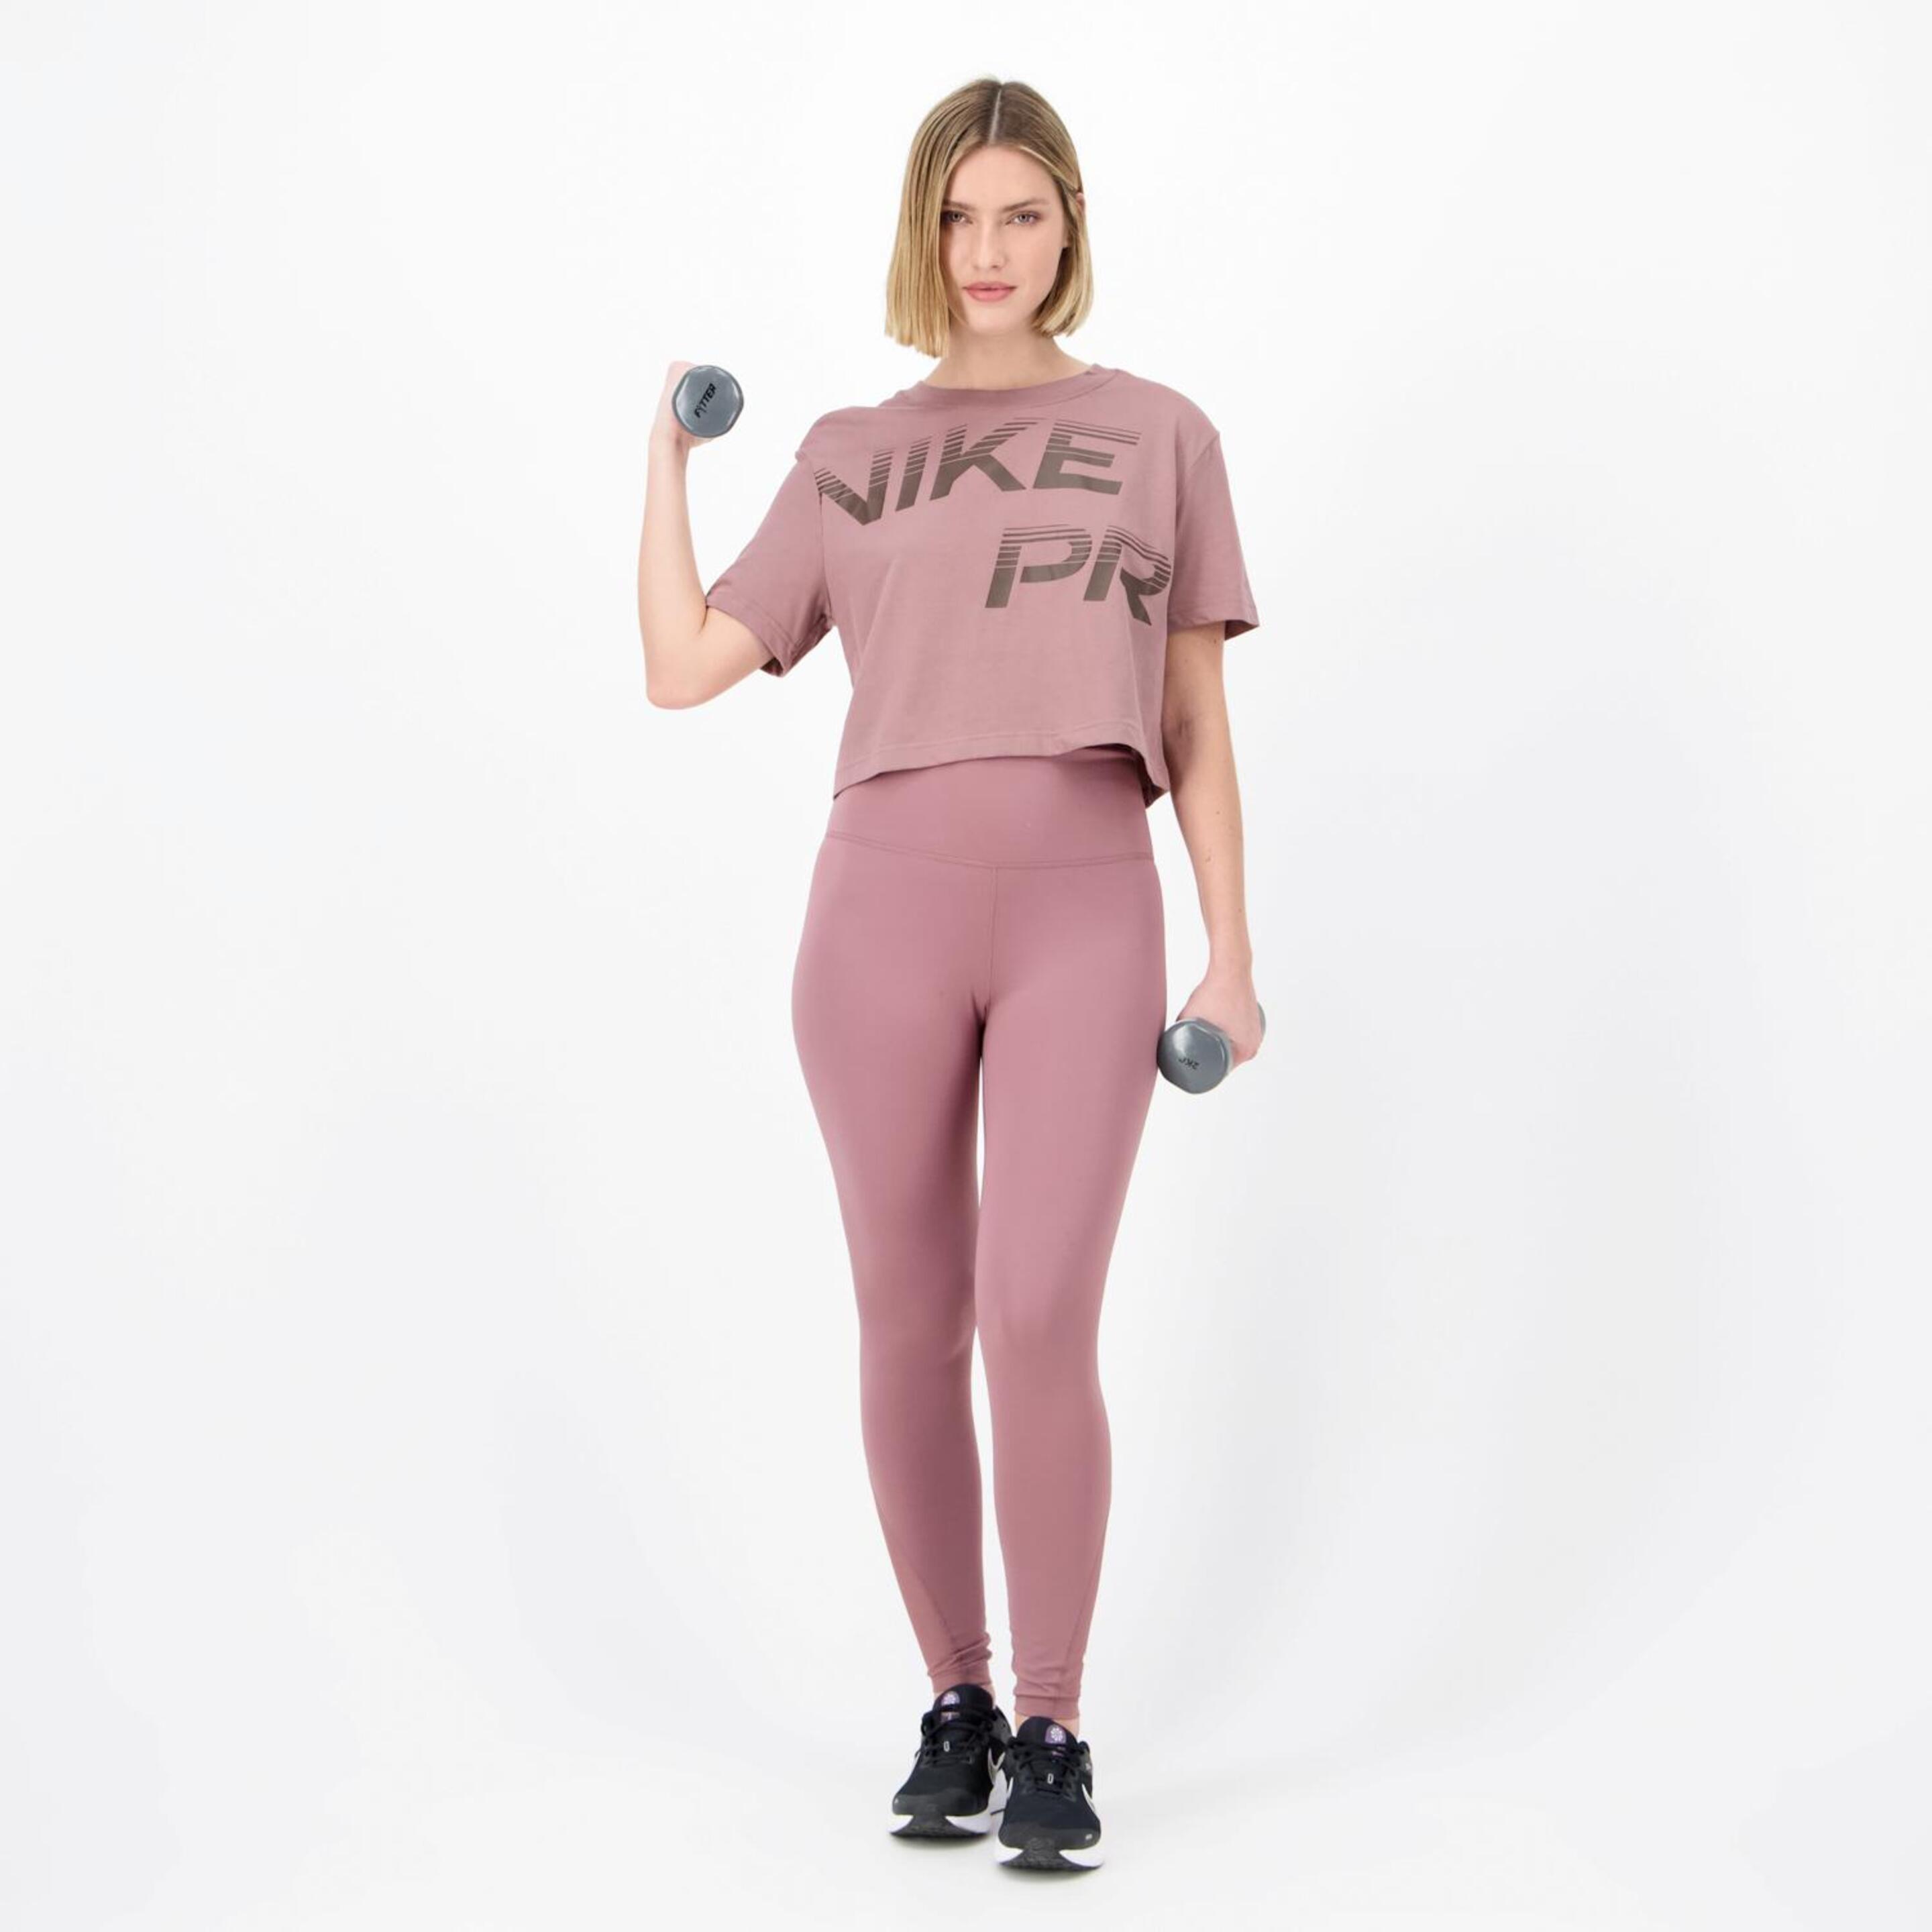 Camiseta Nike - Malva - Camiseta Boxy Mujer